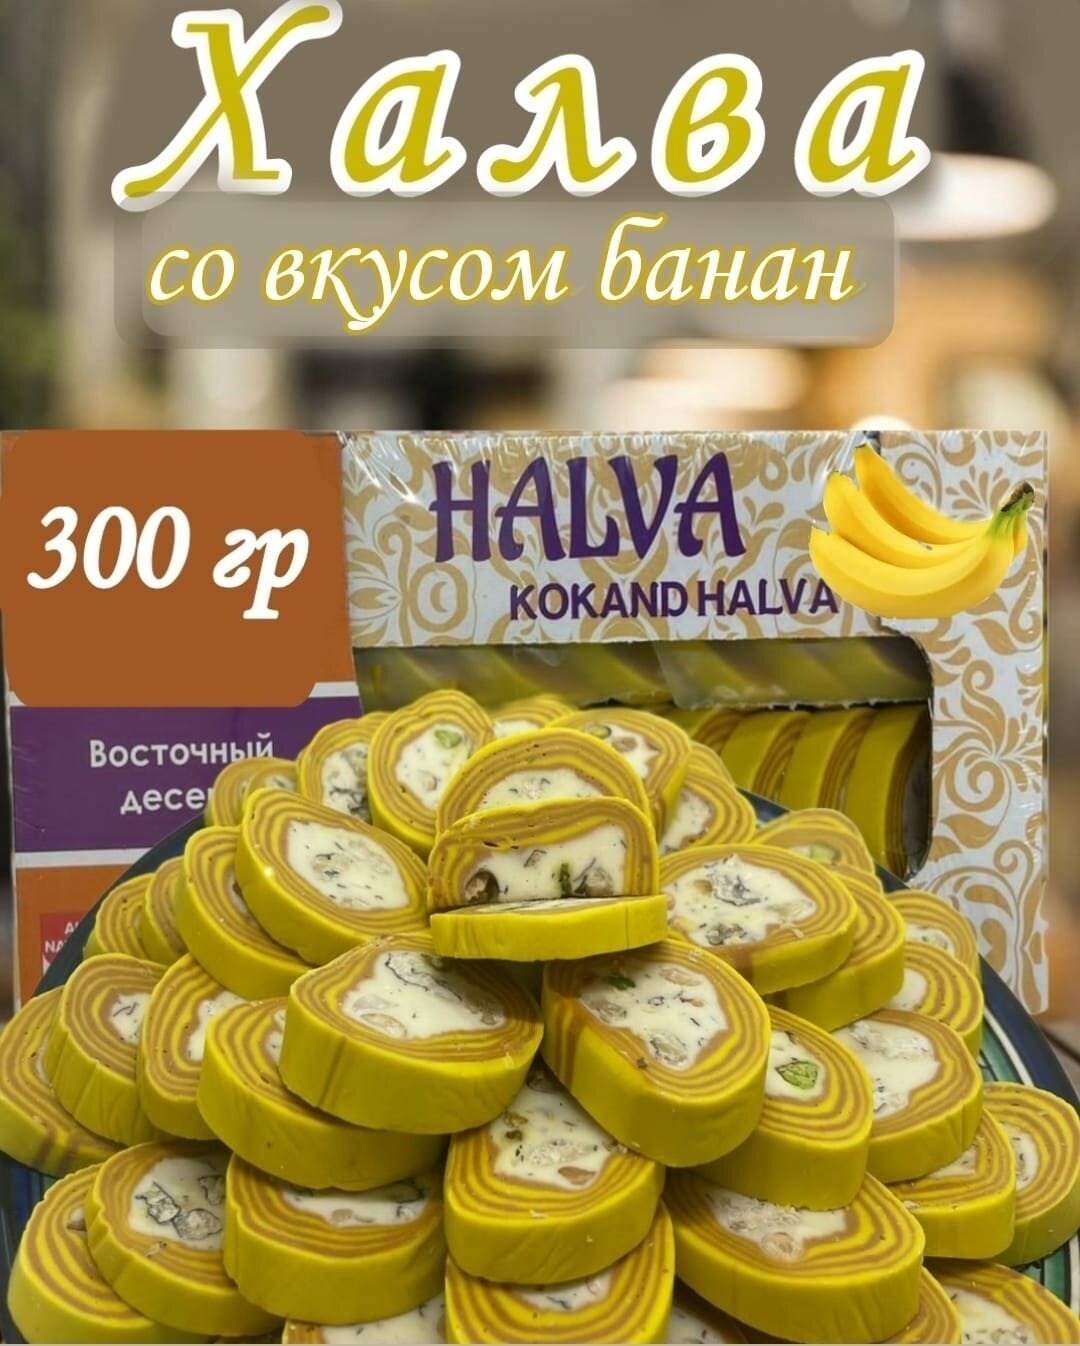 Халва узбекская нарезная со вкусом банана 300 гр - фотография № 1